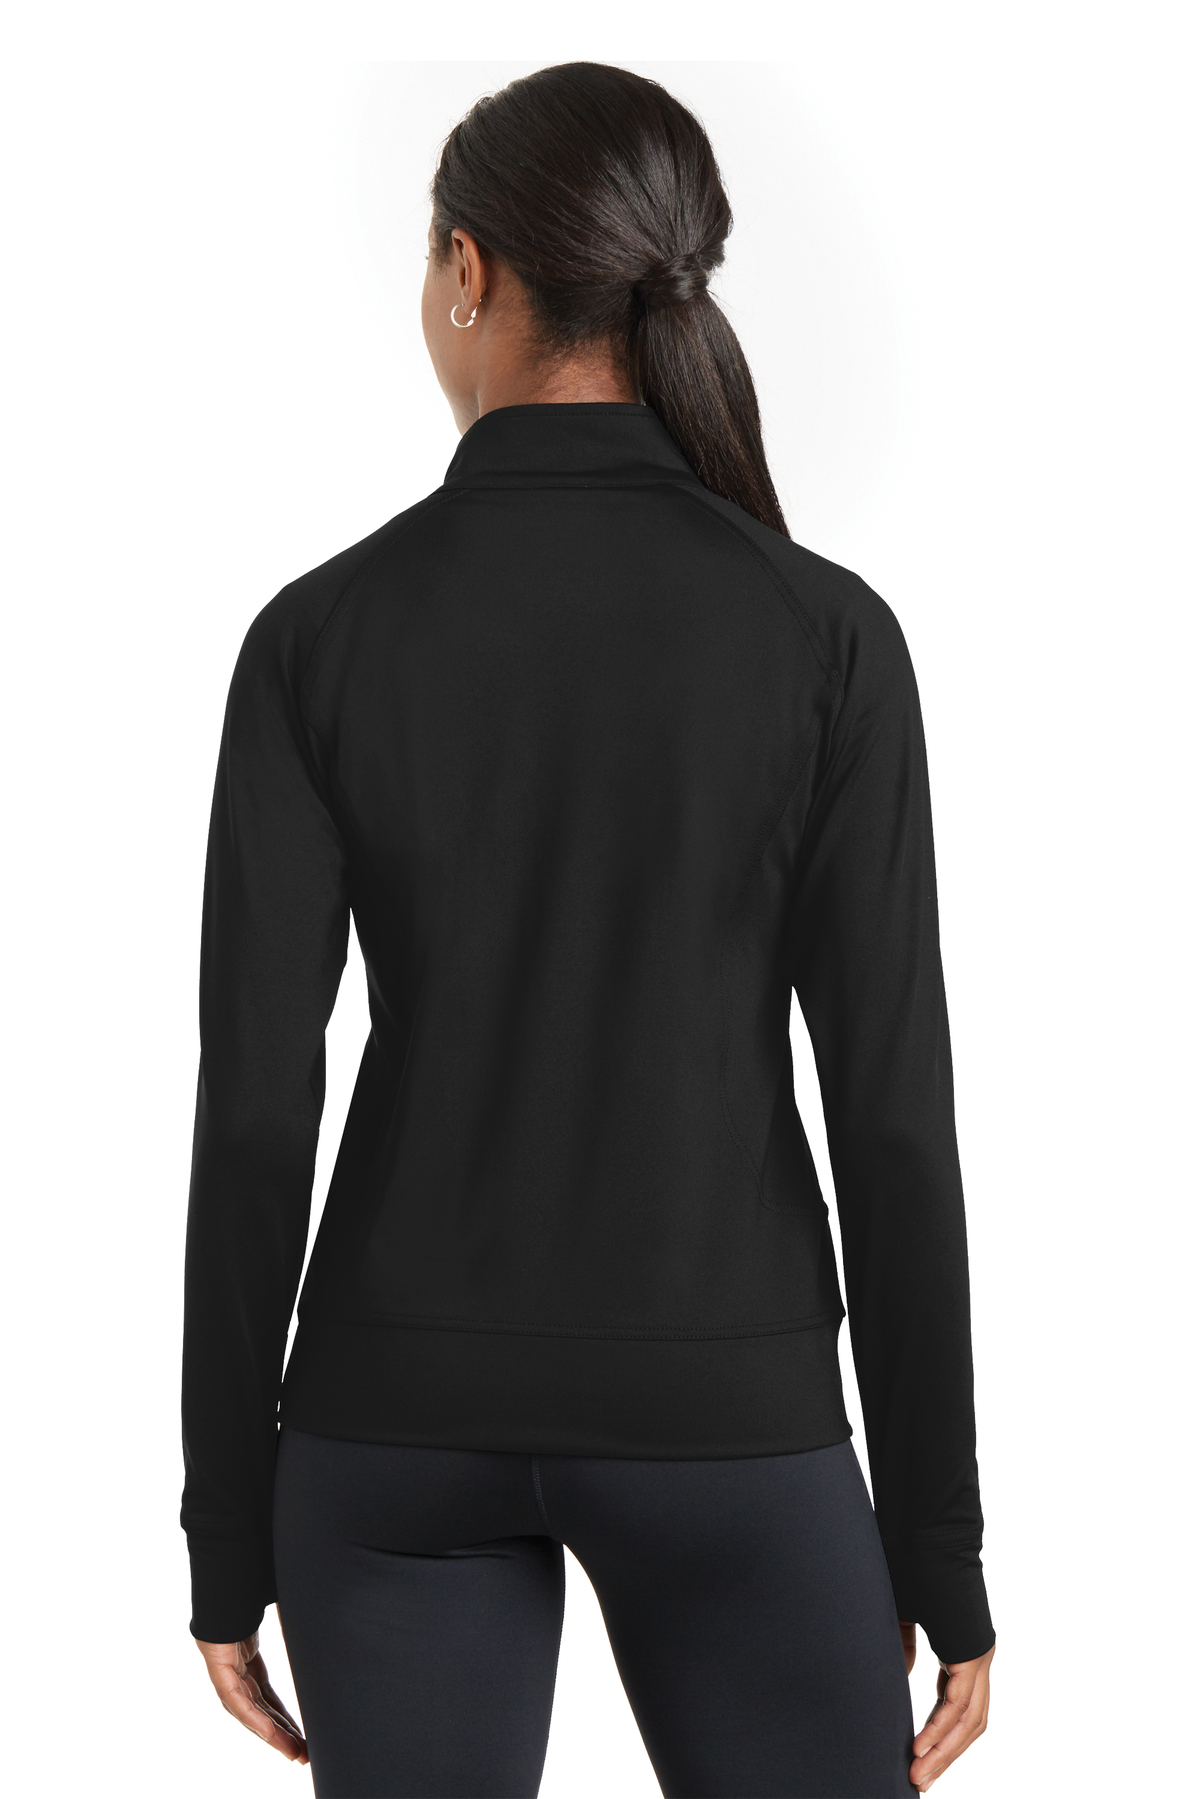 Sport-Tek Ladies NRG Fitness Jacket, Product